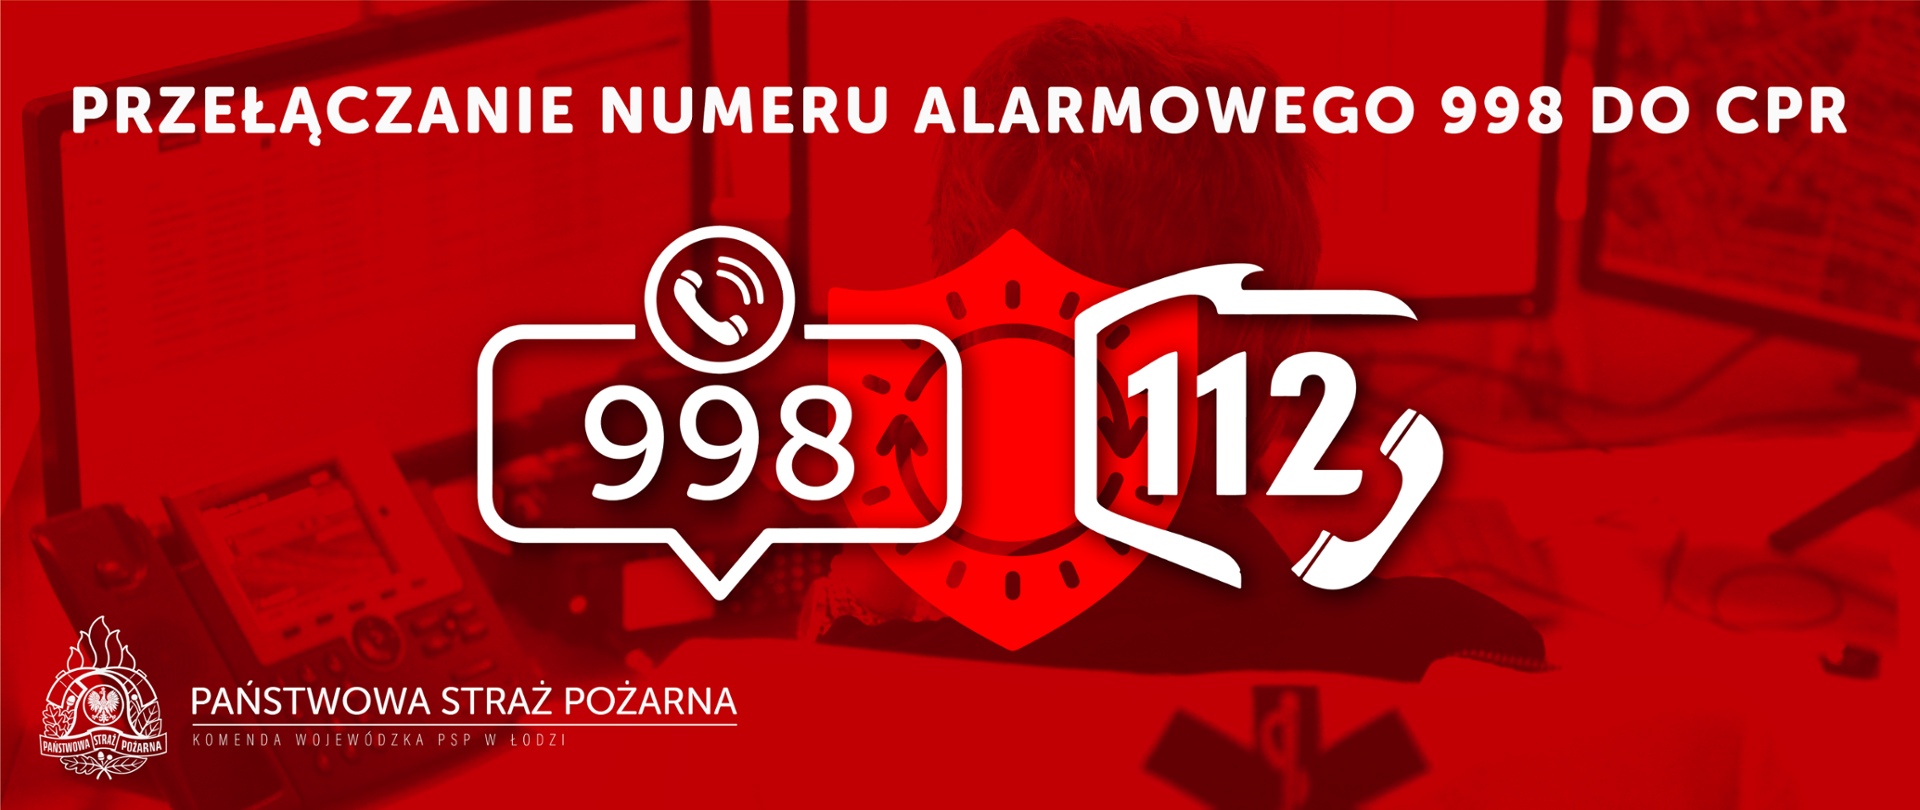 Napisy 998 oraz 112 na czerwonym tle mówiące o procesie przełączanie numeru alarmowego 998 do Centrów Powiadamiania Ratunkowego